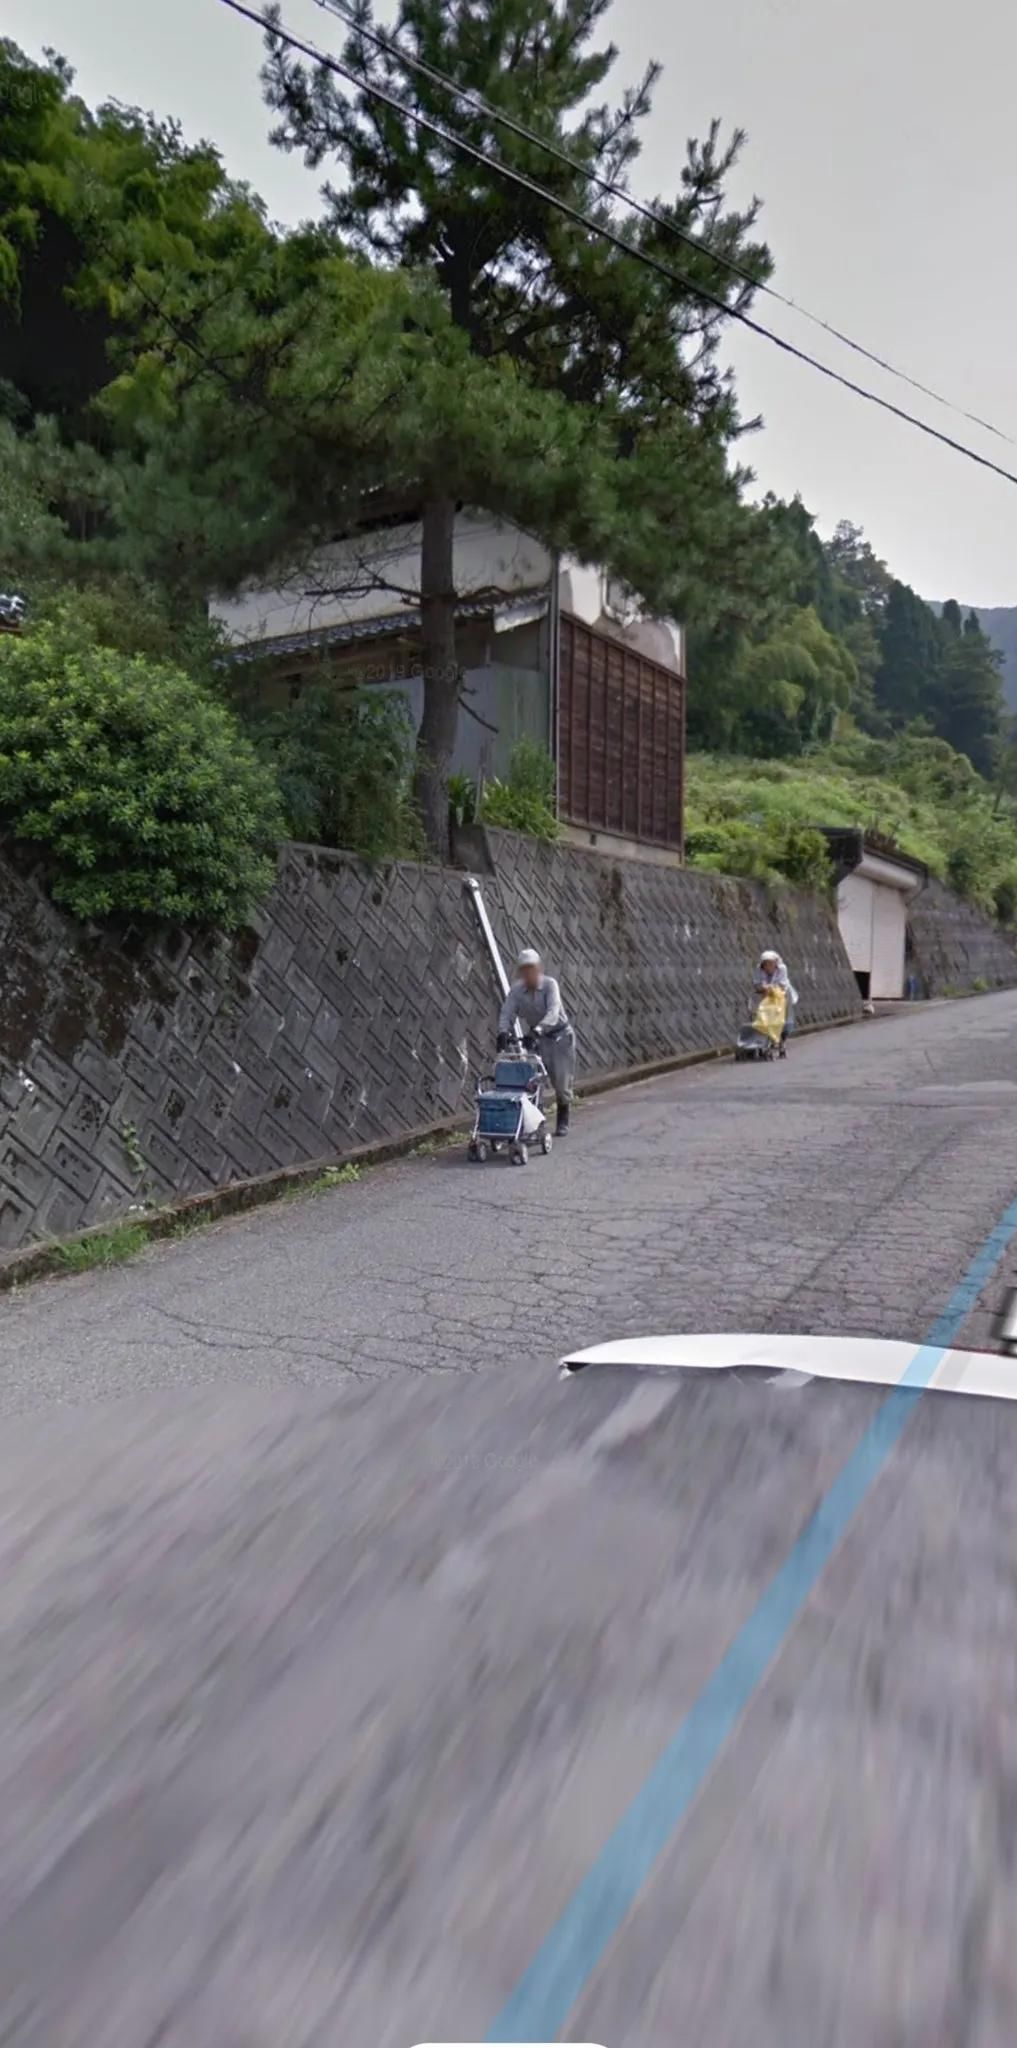 这位日本网友和谷歌街景的故事，感动了58万人